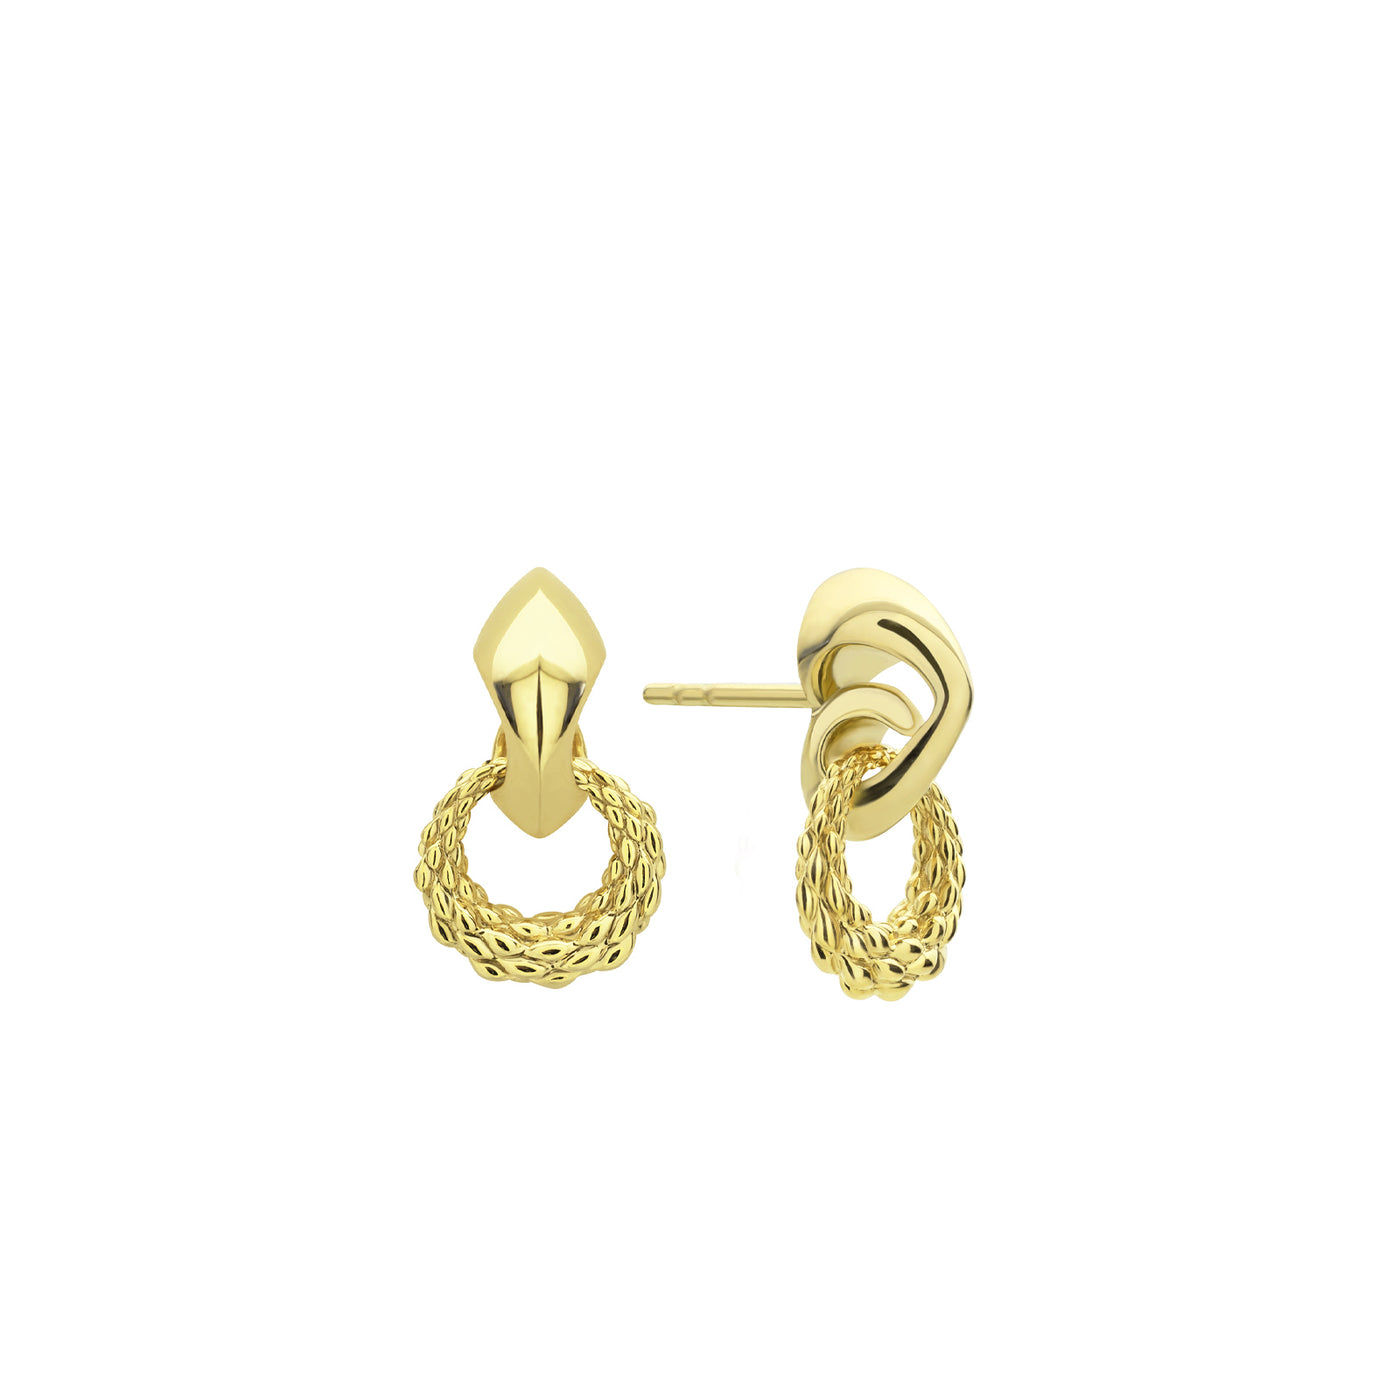 18k gold drop earrings